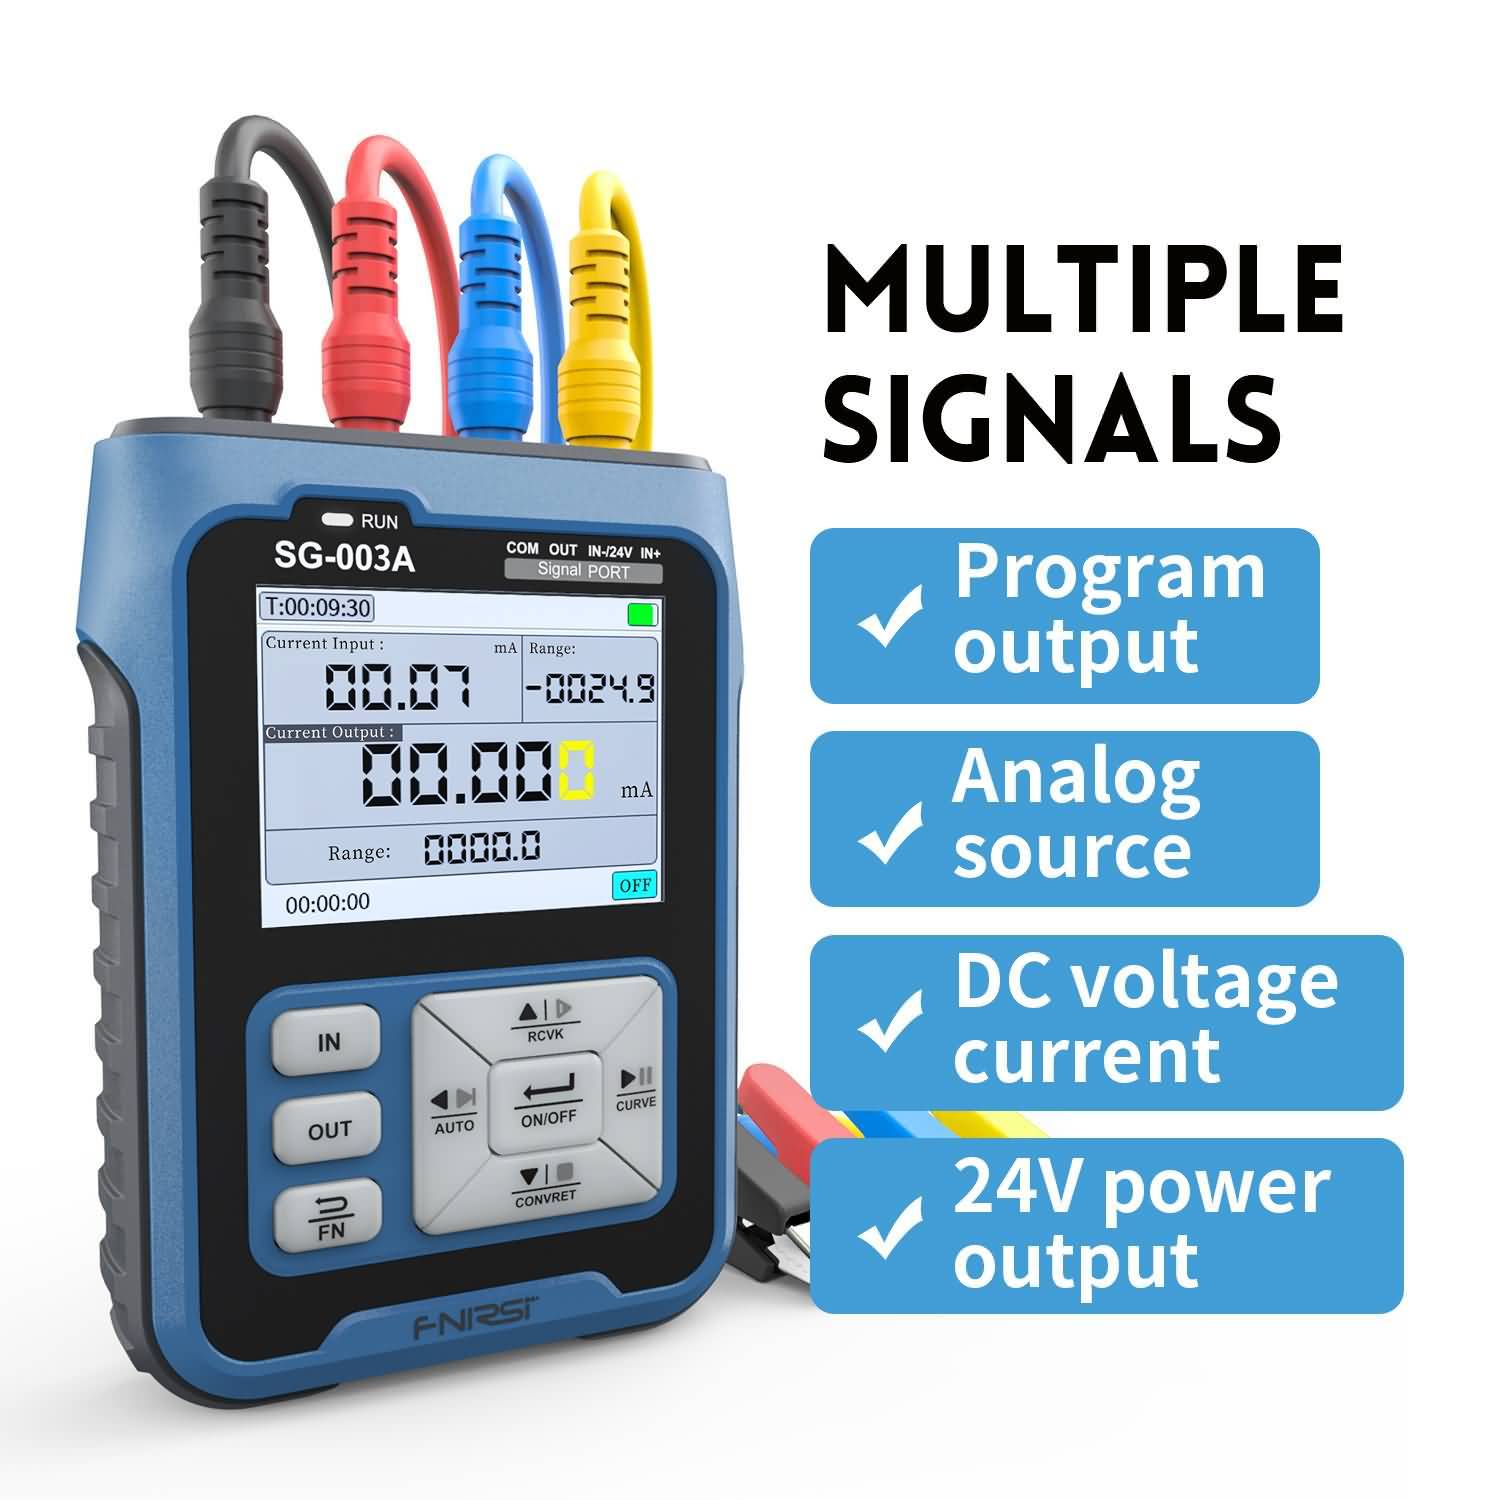 fnirsi-sg-003a-0-10v-adjustable-current-voltage-simulator-4-20ma-signal-generator-sources-transmitter-calibrator-trans